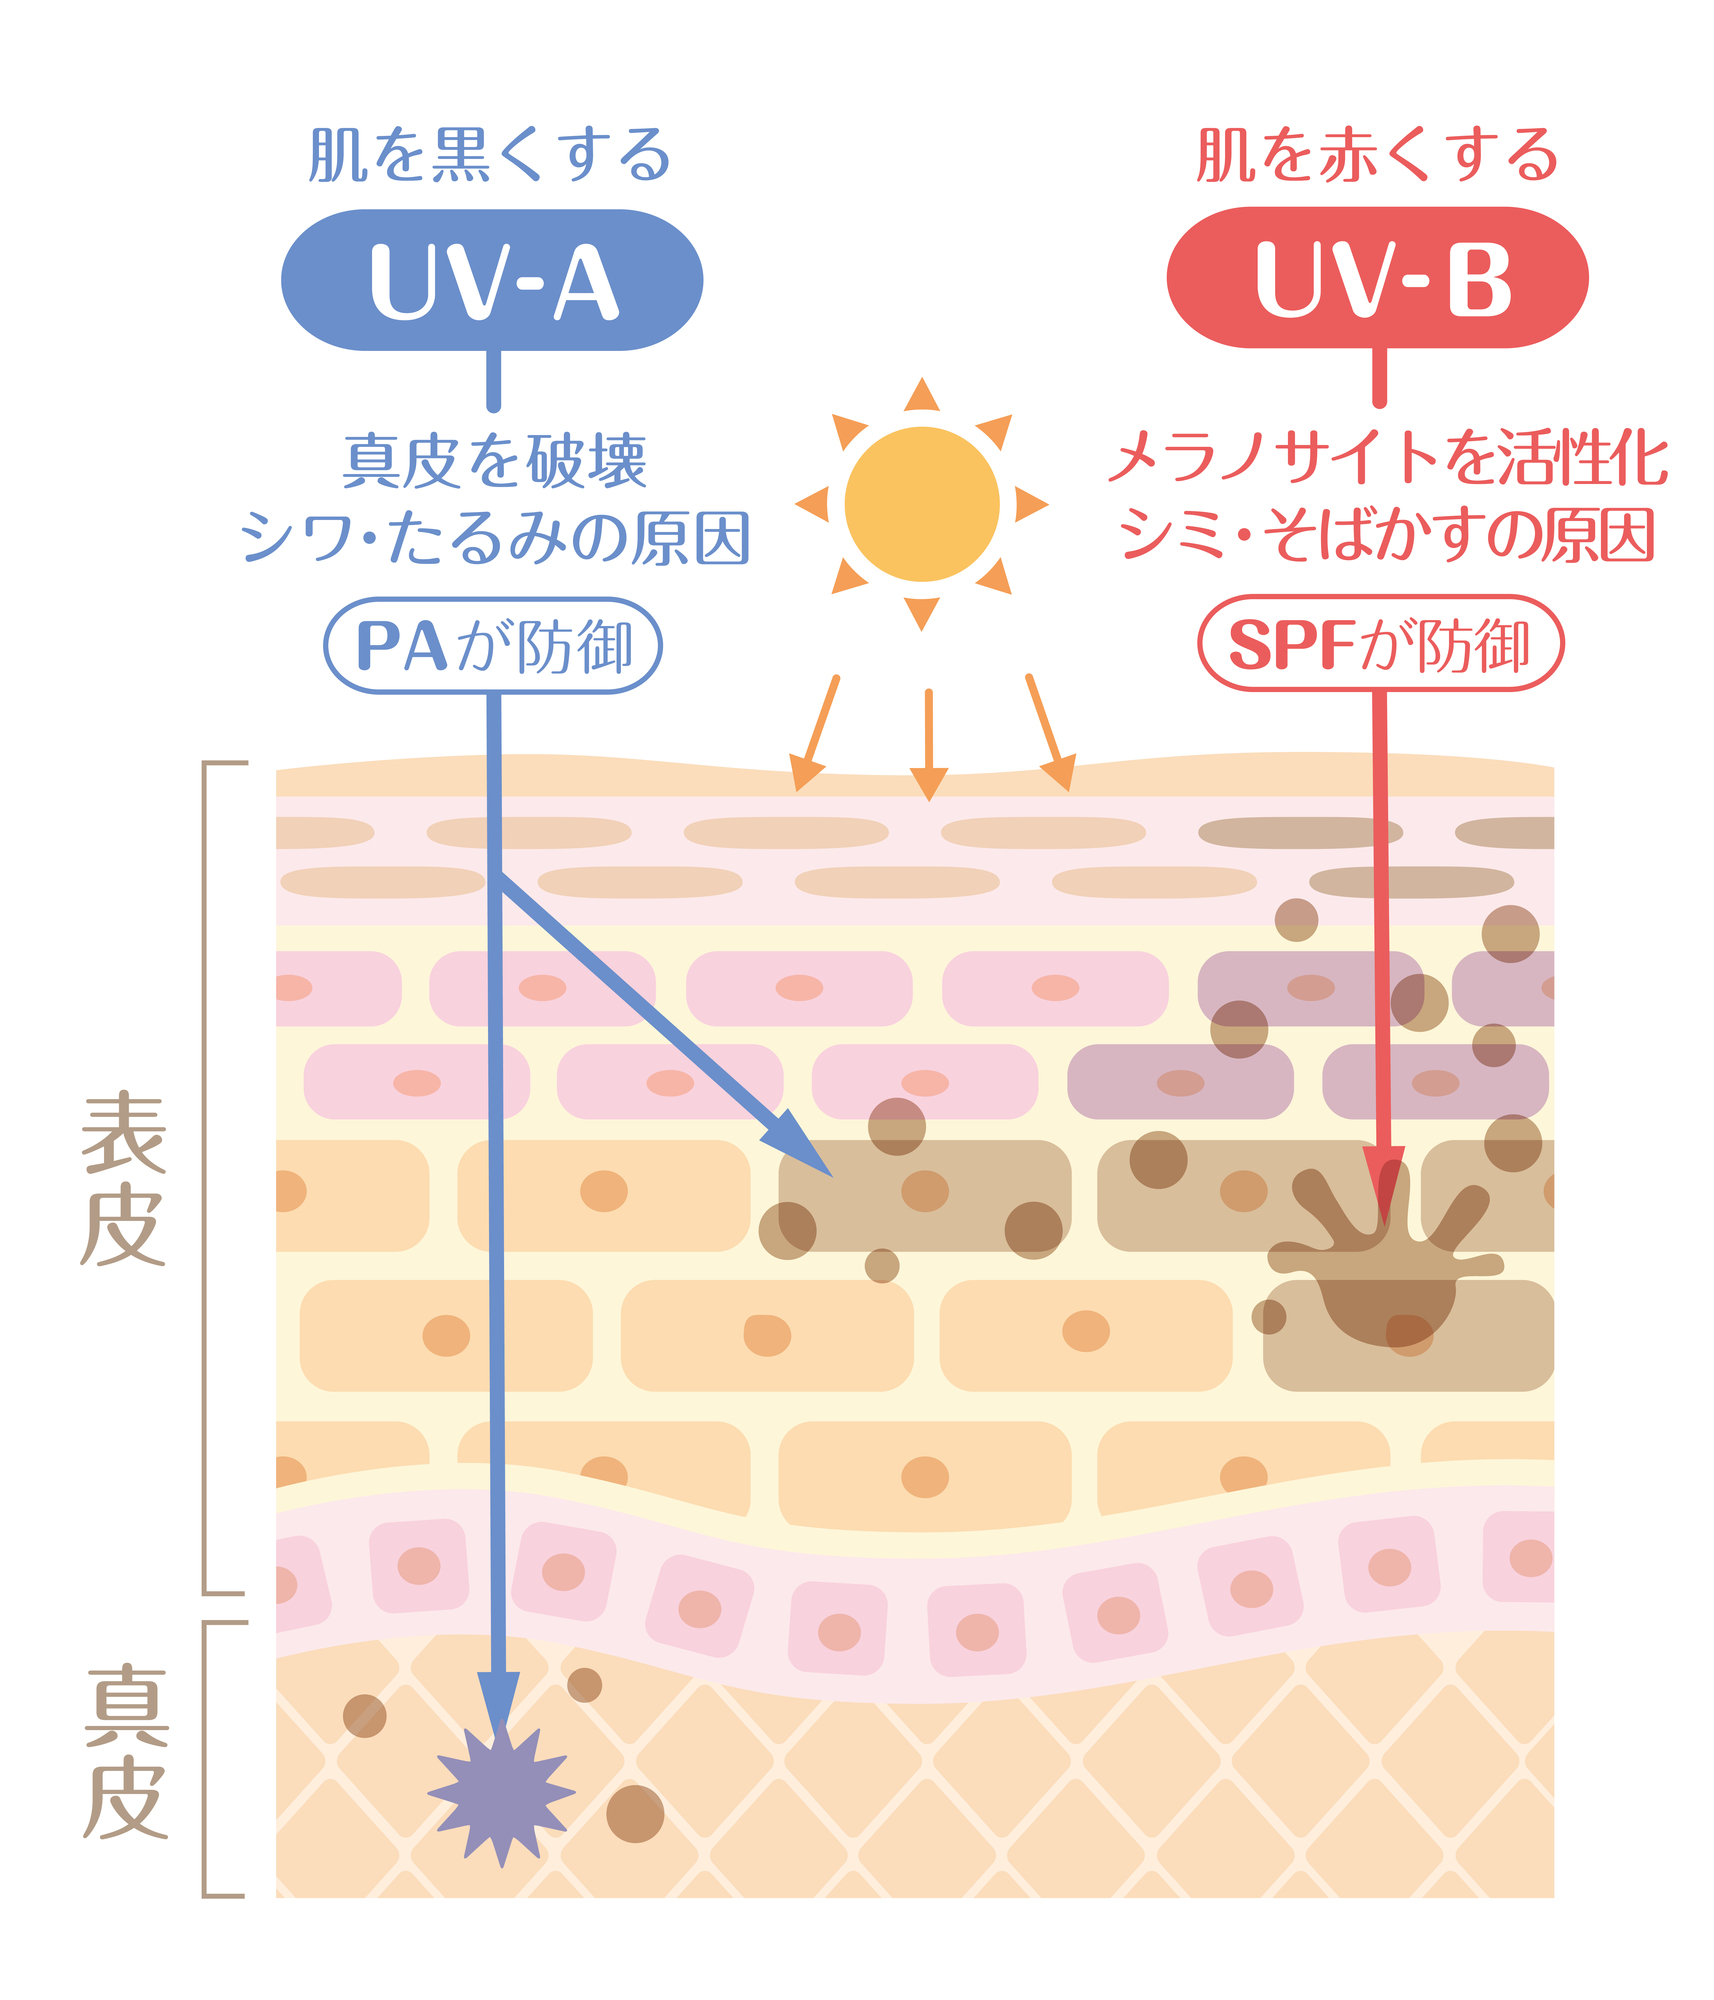 UV-Aは、真皮にまで到達してコラーゲンやエラスチンにダメージを与え、たるみの原因になることも。